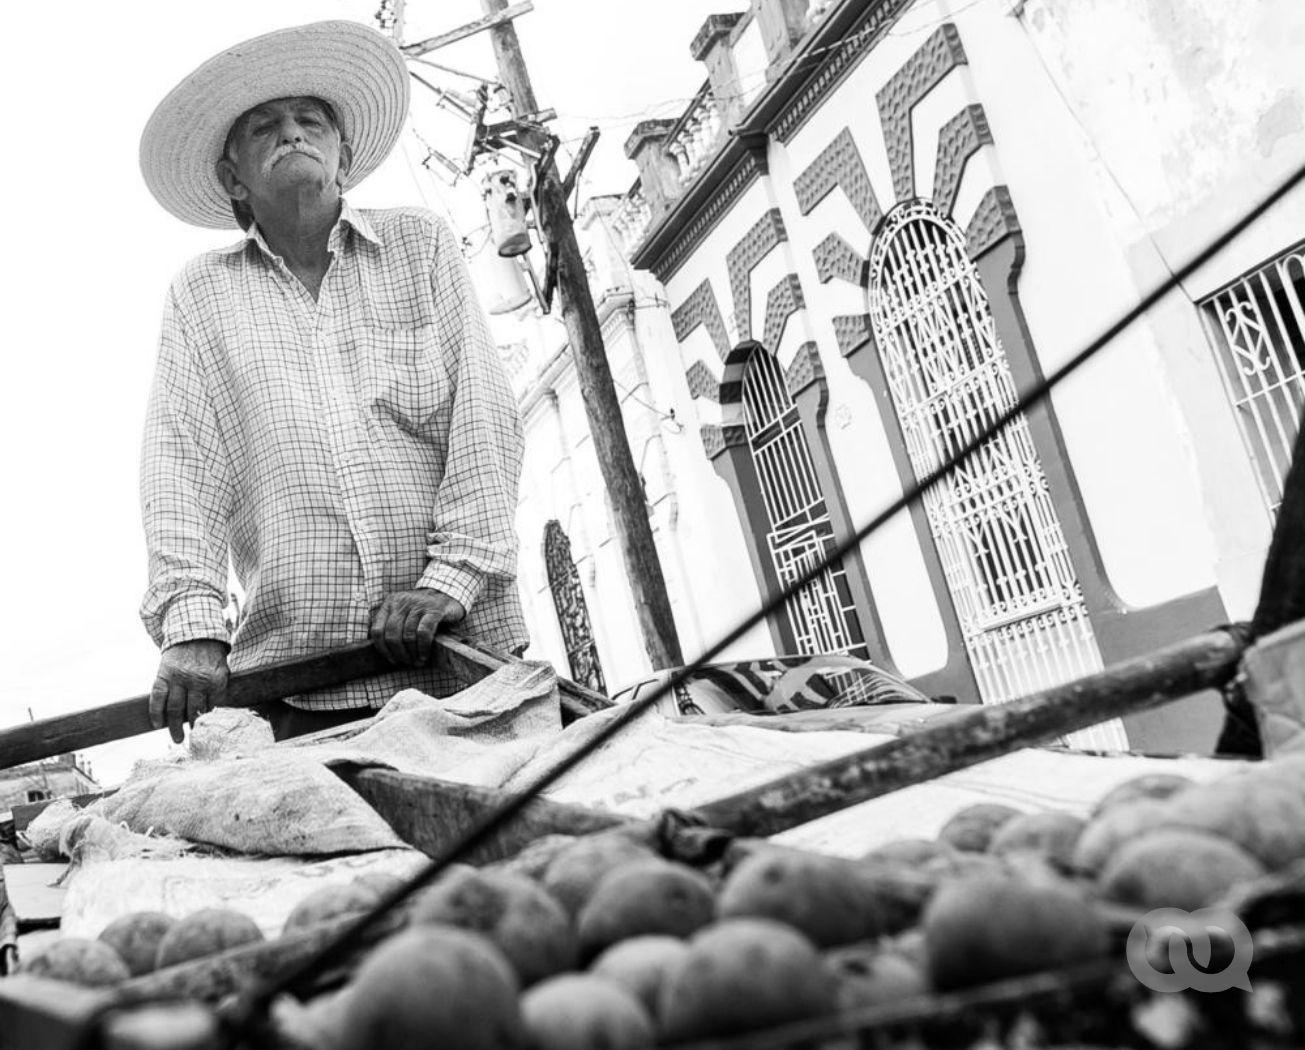 Vejez. Anciano lleva carretilal de alimentos en Cuba. Foto: Bradays Barreras.